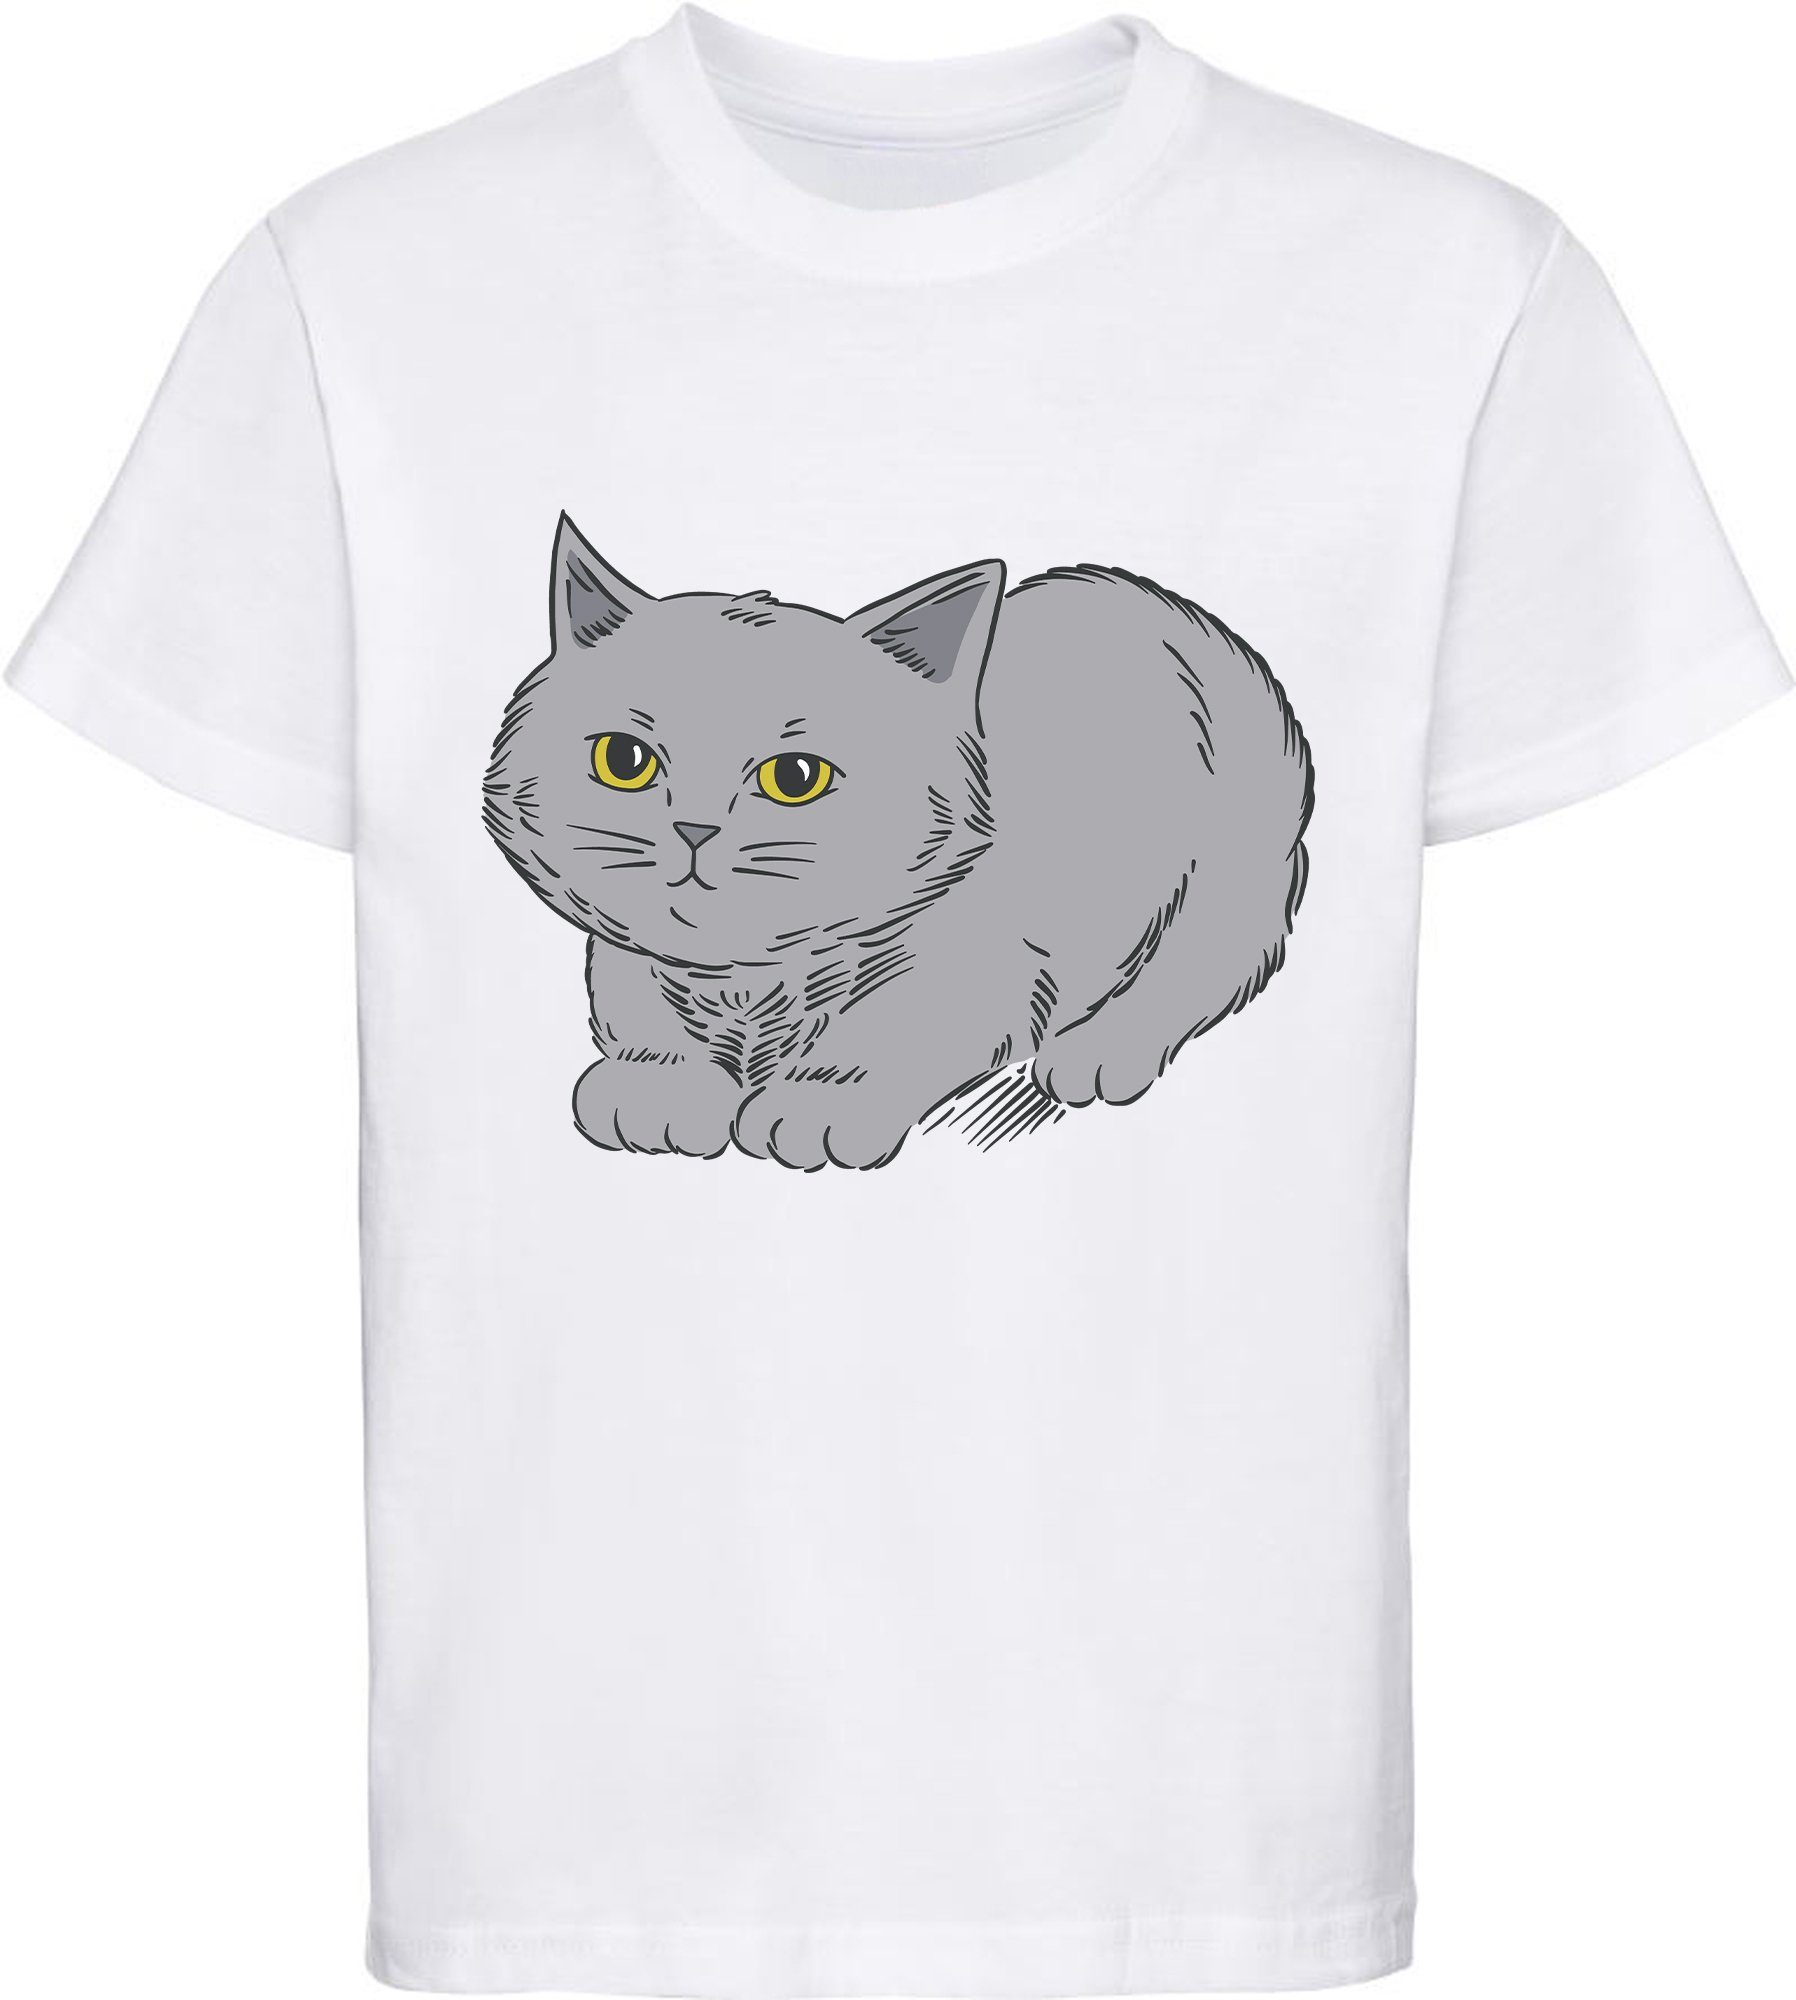 MyDesign24 Print-Shirt bedrucktes Mädchen T-Shirt mit niedlicher grauen Katze Baumwollshirt mit Katze, weiß, schwarz, rot, rosa, i107 weiss | T-Shirts